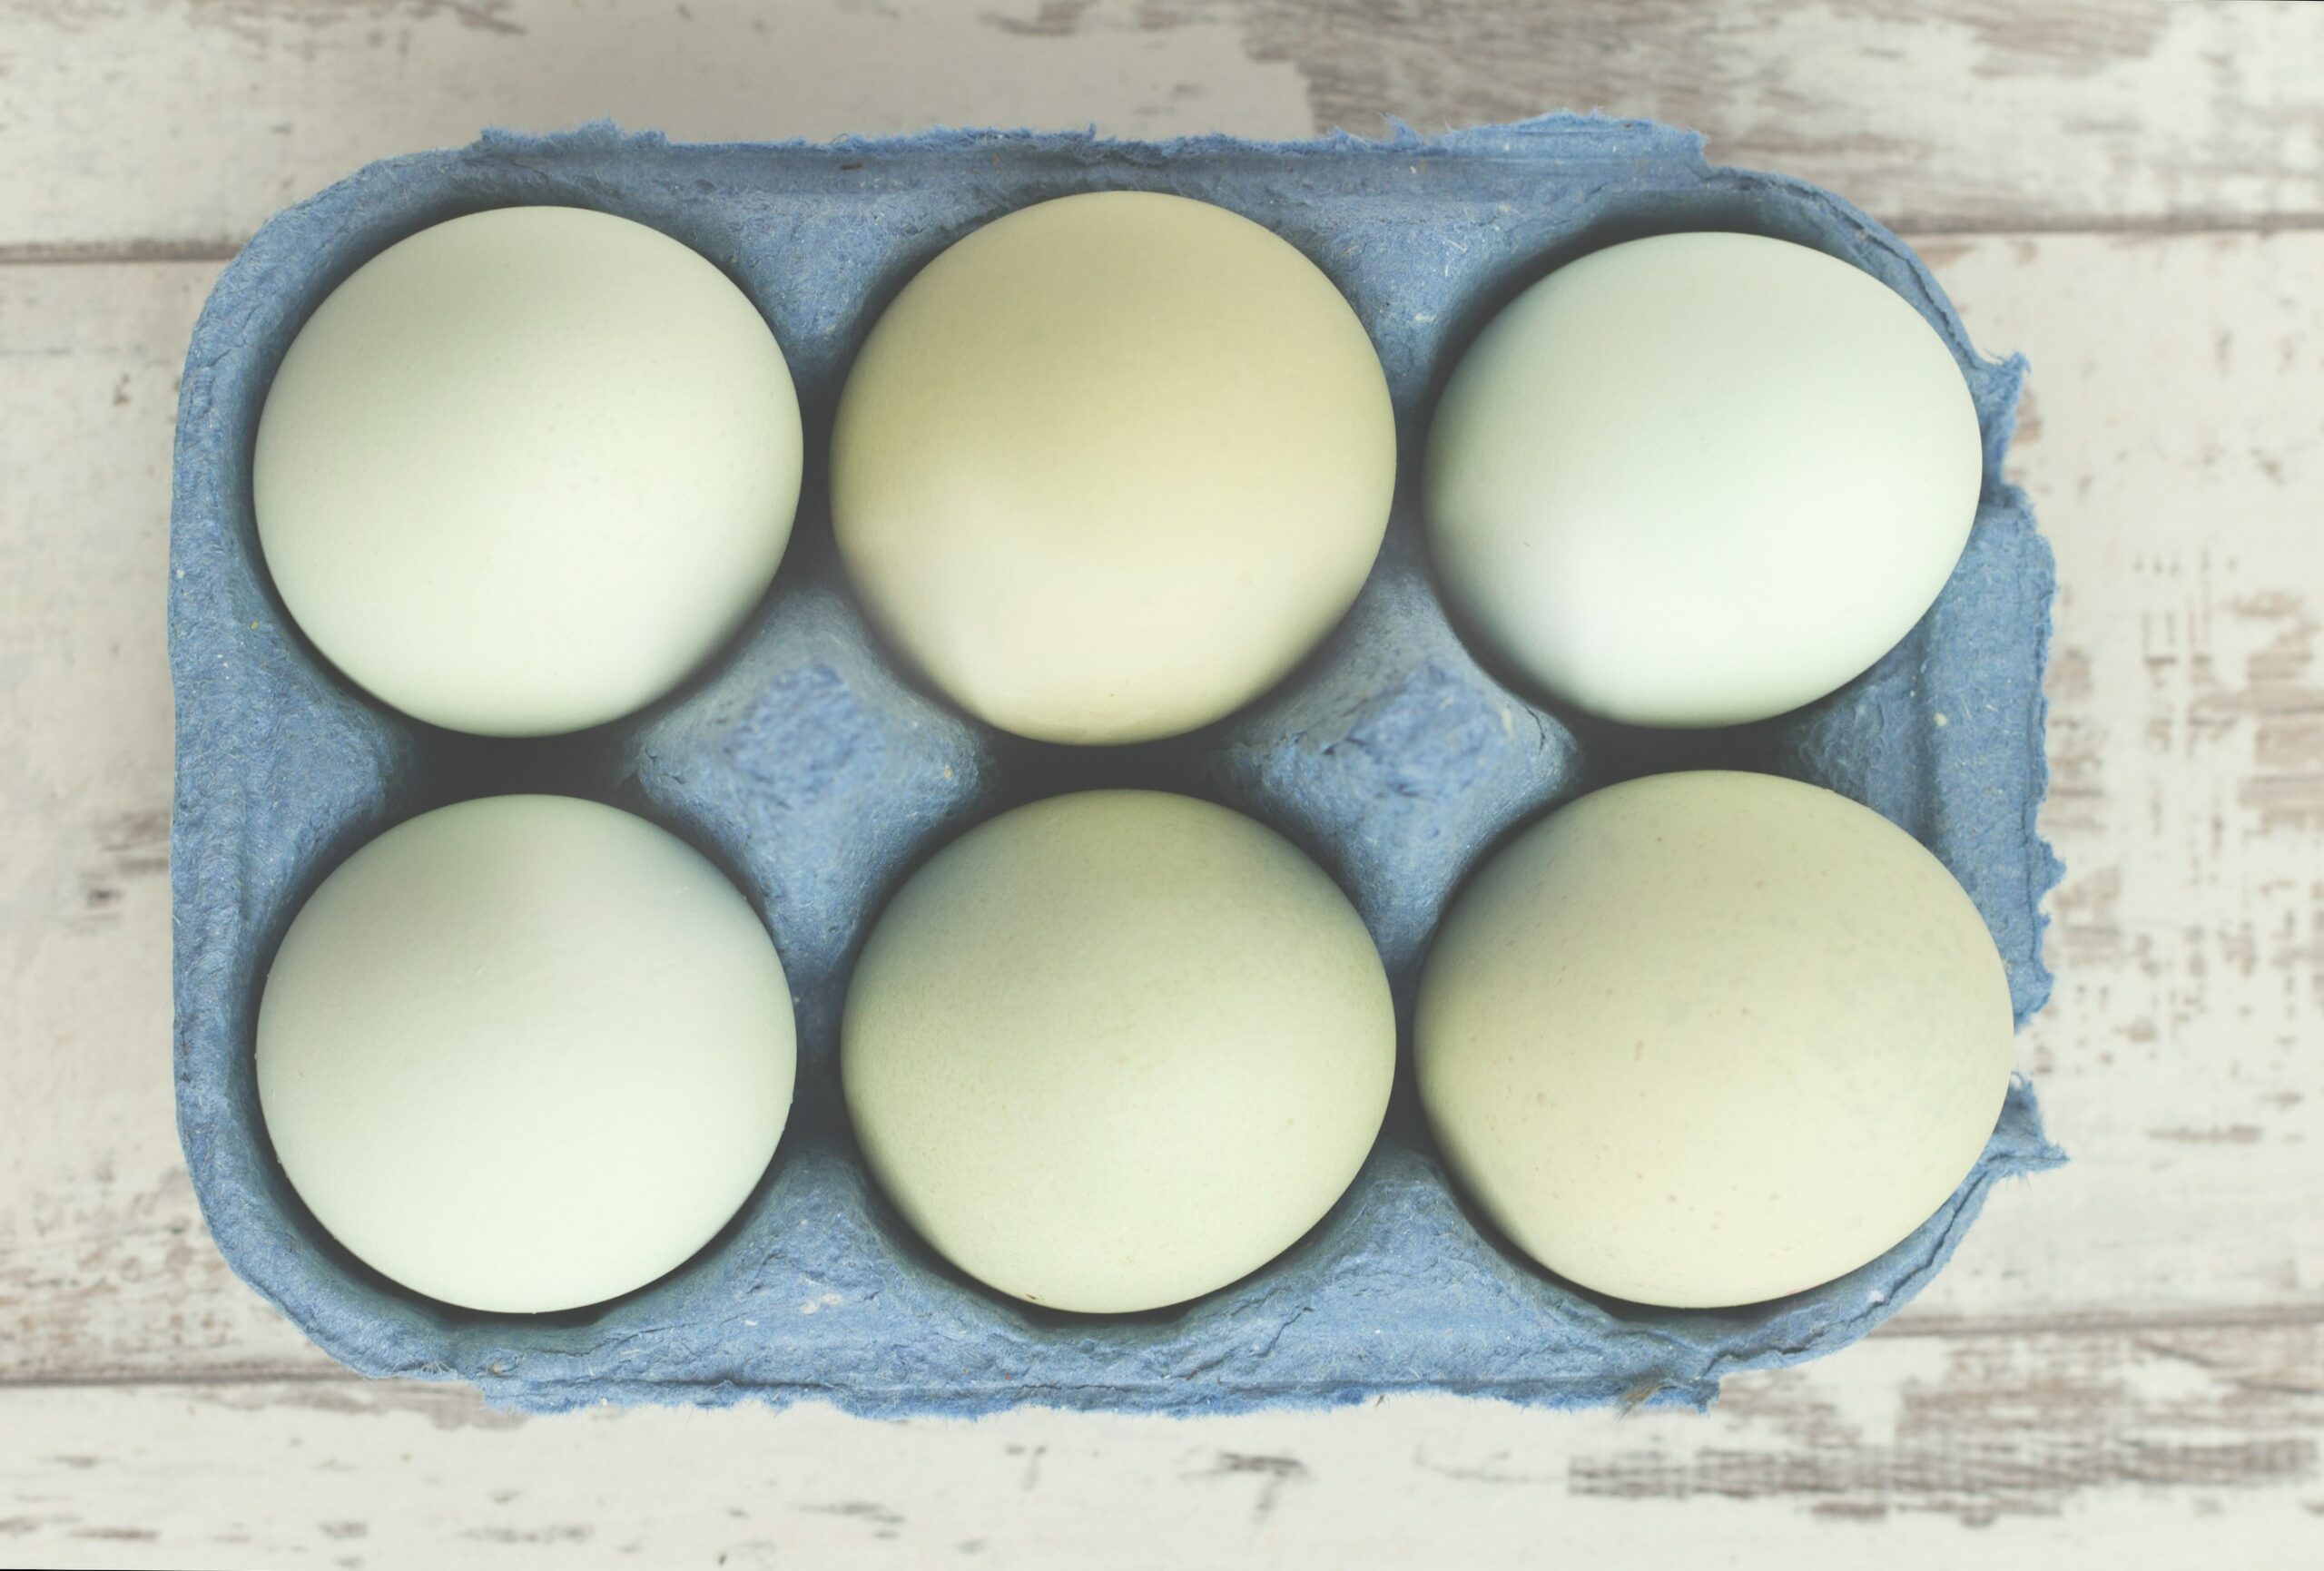 Witte eieren genieten grensoverschrijdend steeds vaker de voorkeur